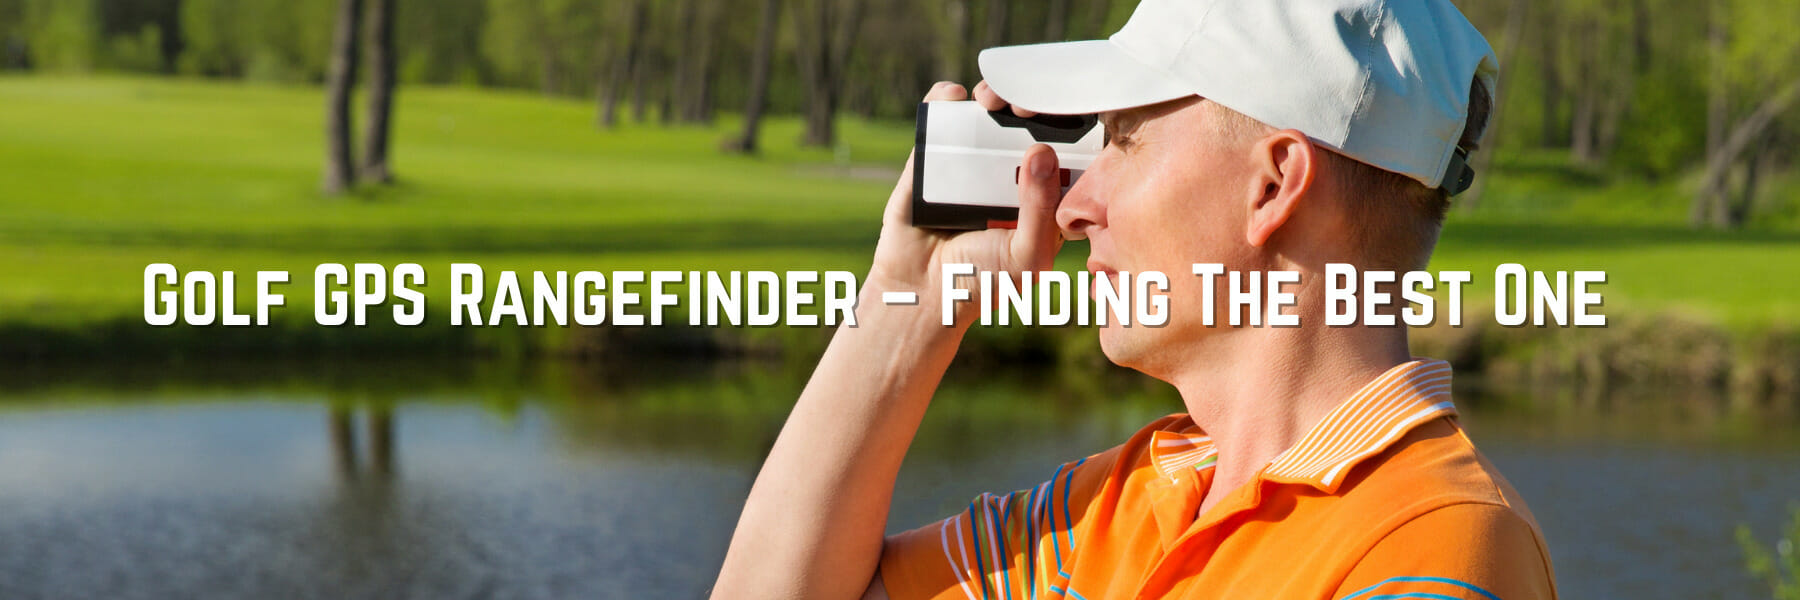 Golf GPS Rangefinder - Finding The Best One